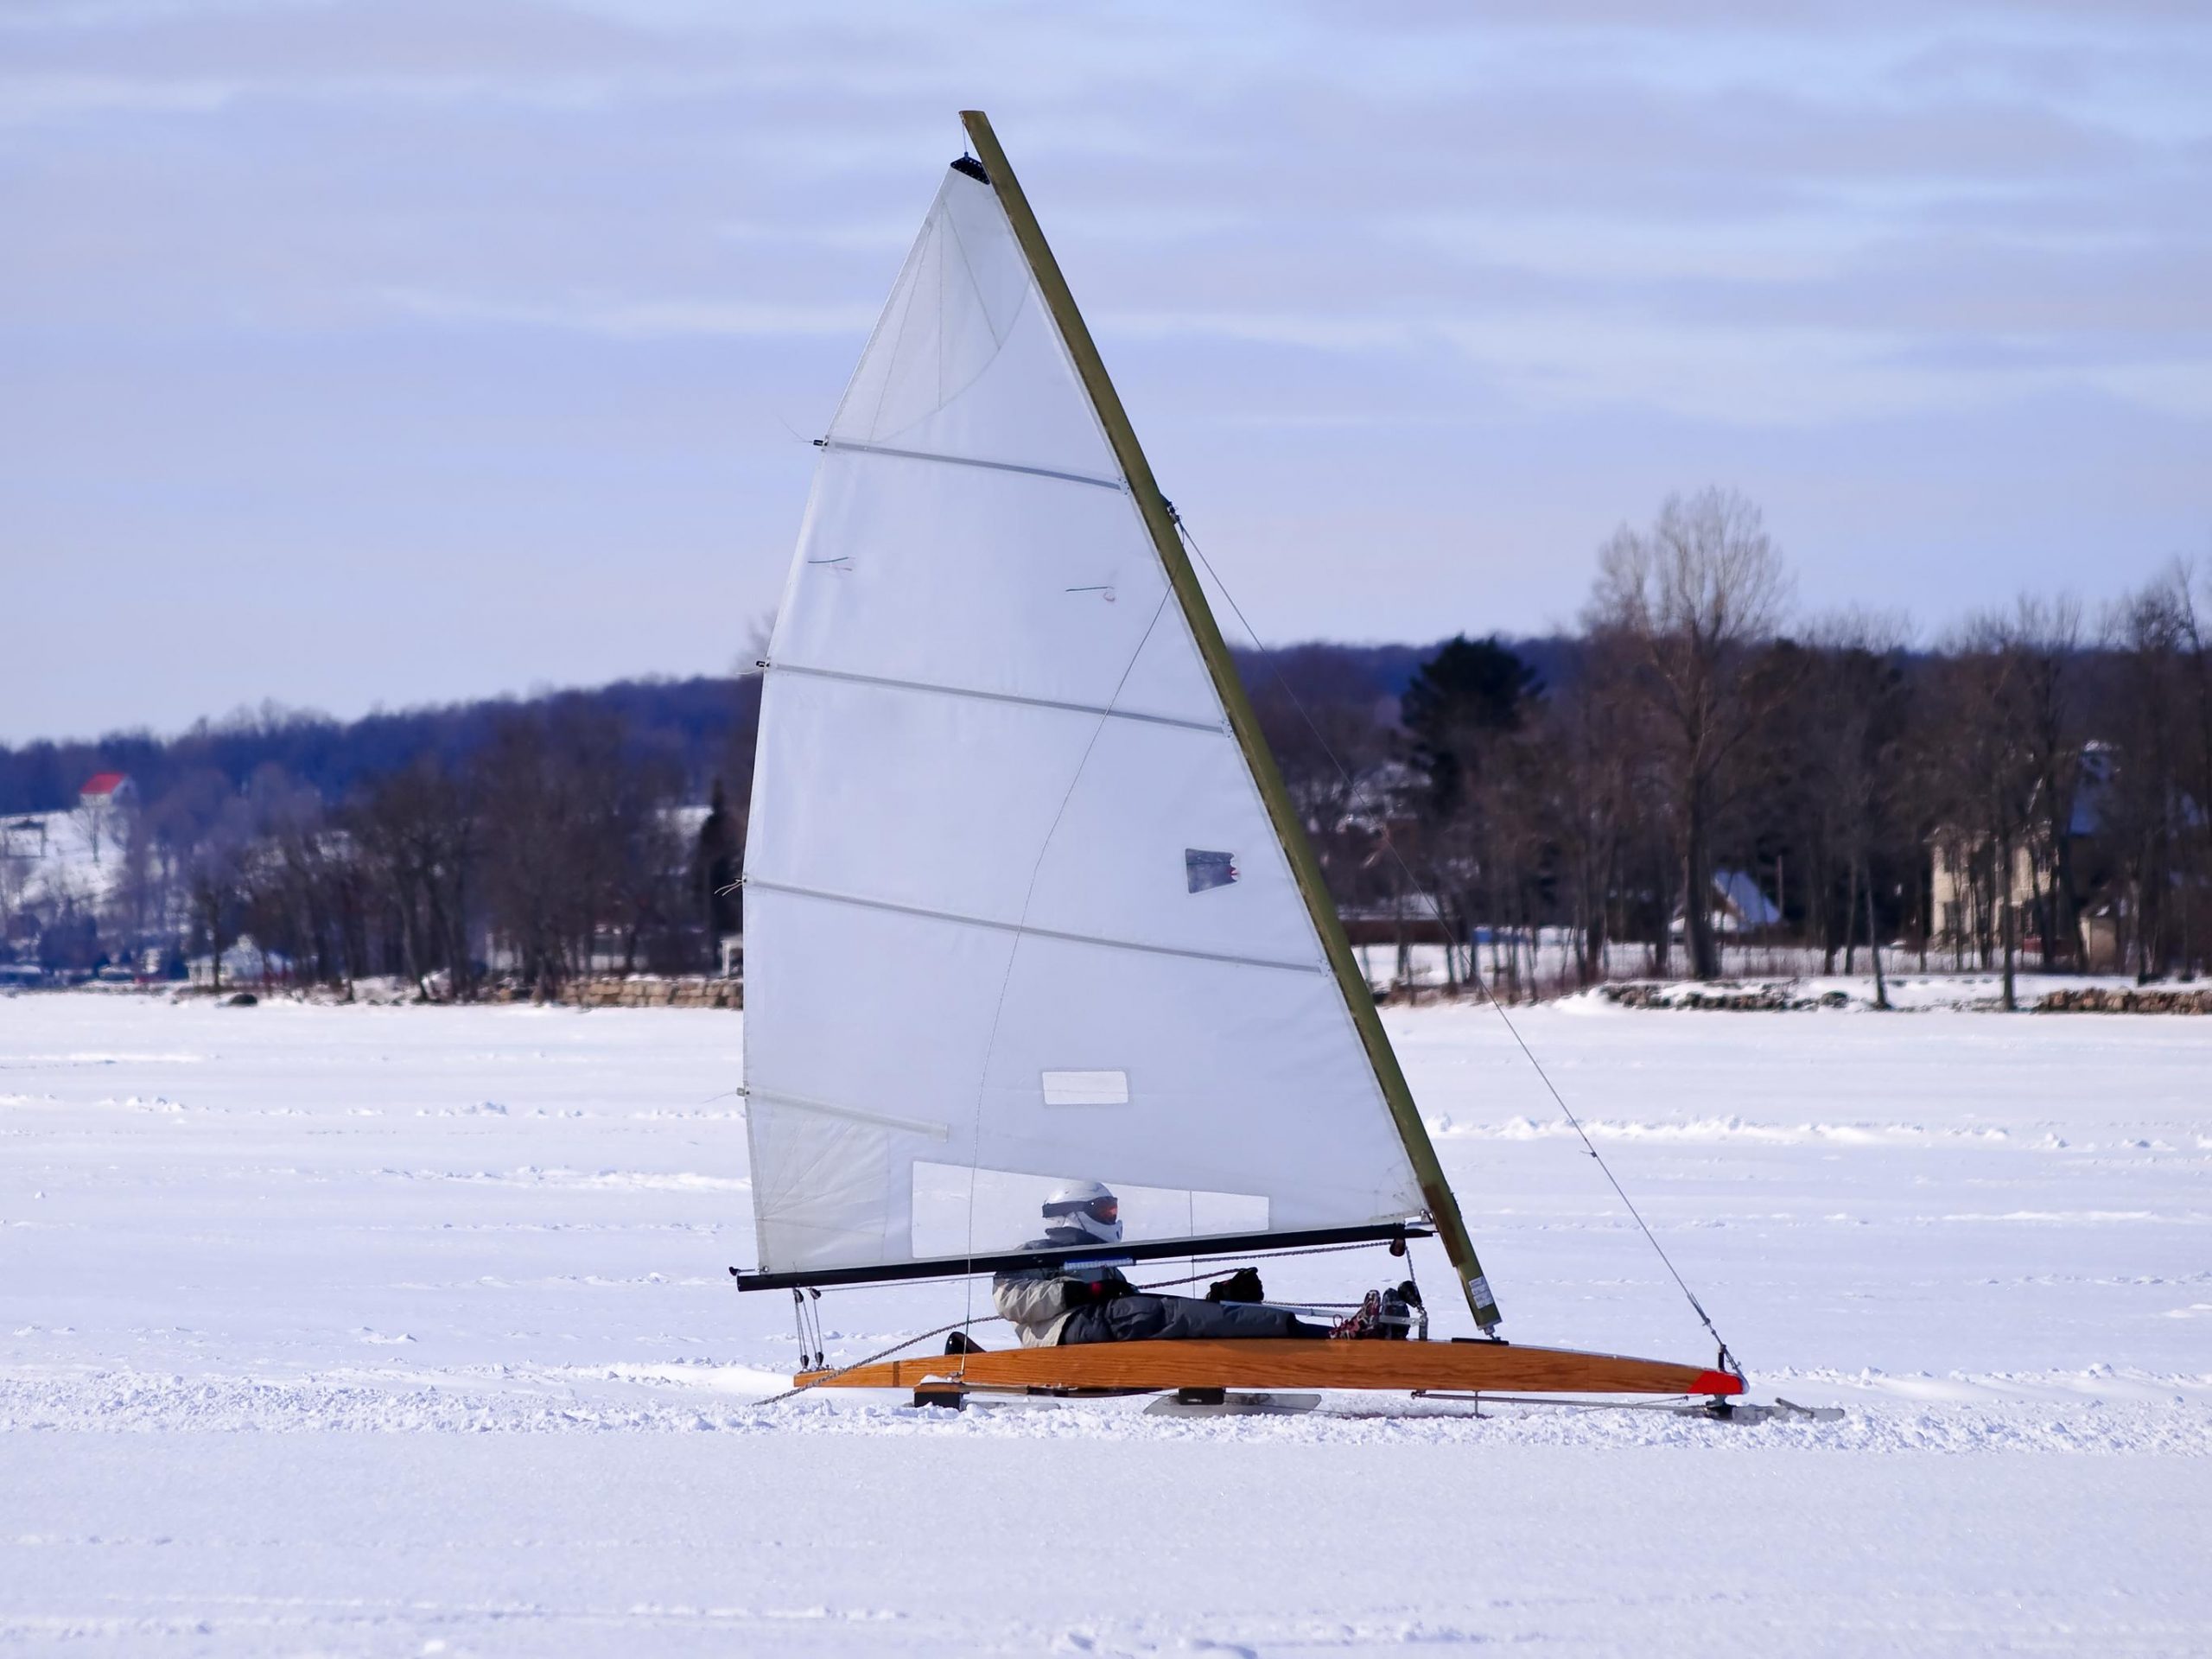 Iceboat sailing on ice